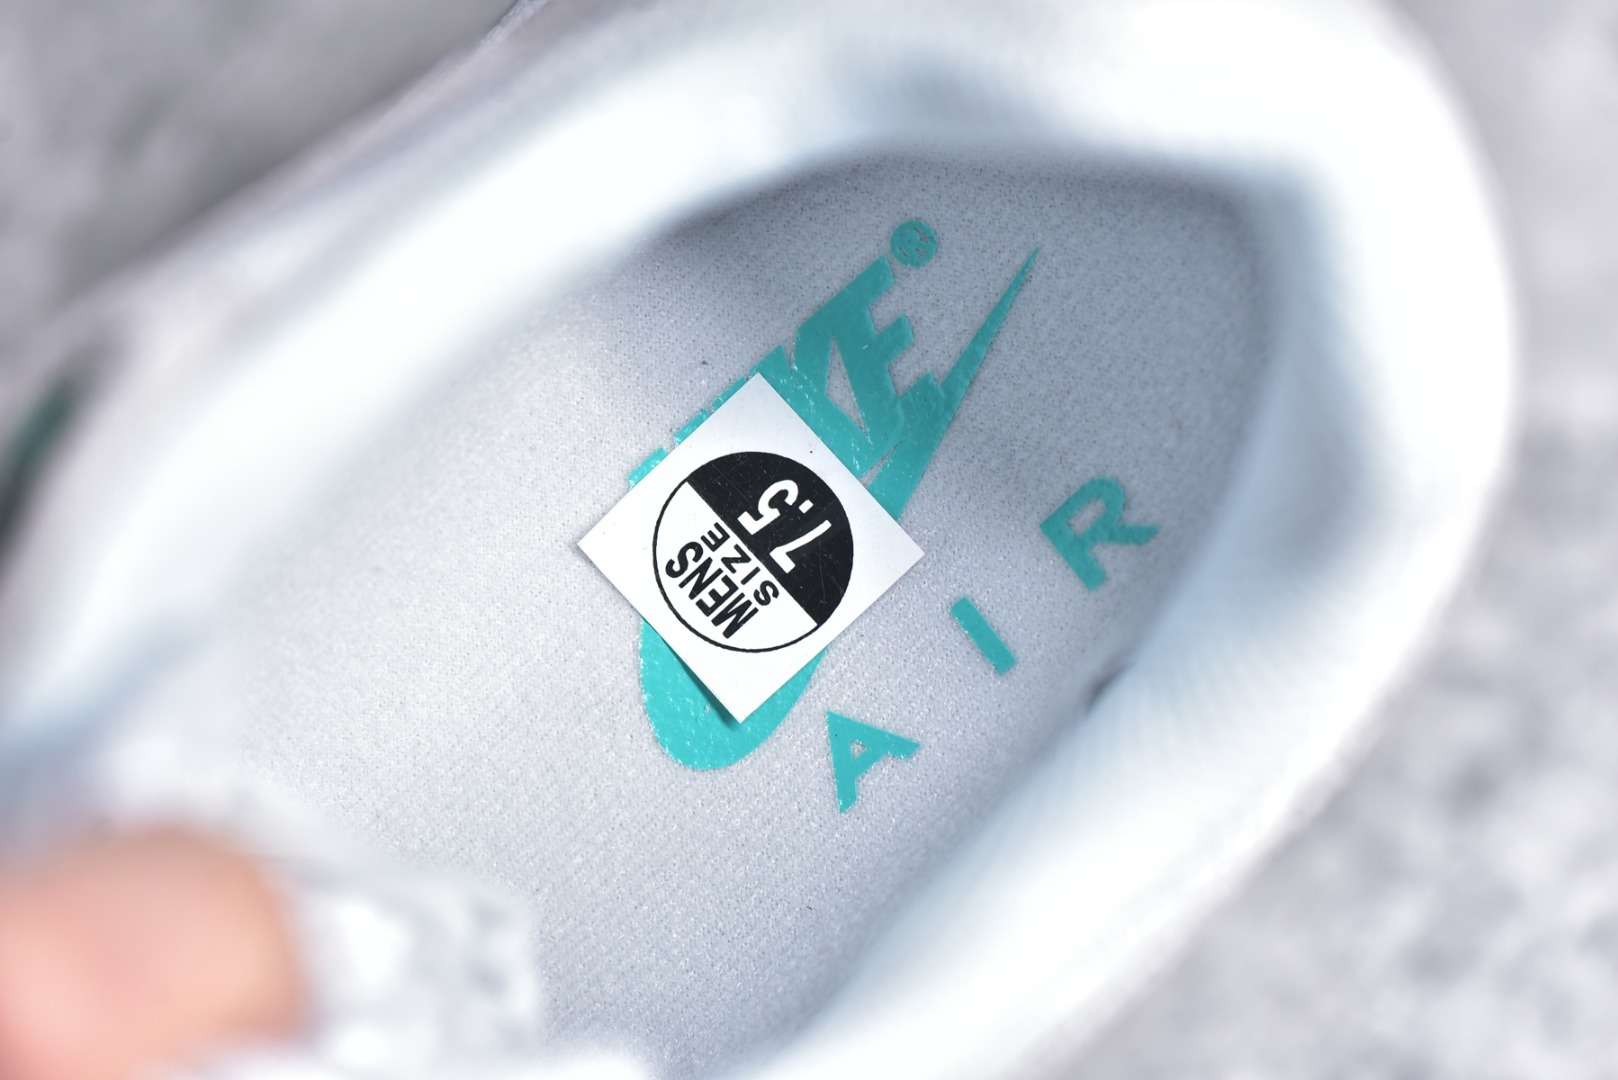 $65 Buy online Nike Air Max 1 "Clear Jade" replica 1:1 Sneakers DZ4549-001. $65 Buy online Nike Air Max 1 "Clear Jade" replica 1:1 Sneakers DZ4549-001. 30,Sports footwear,replica,Nike Air Max 1 Prm